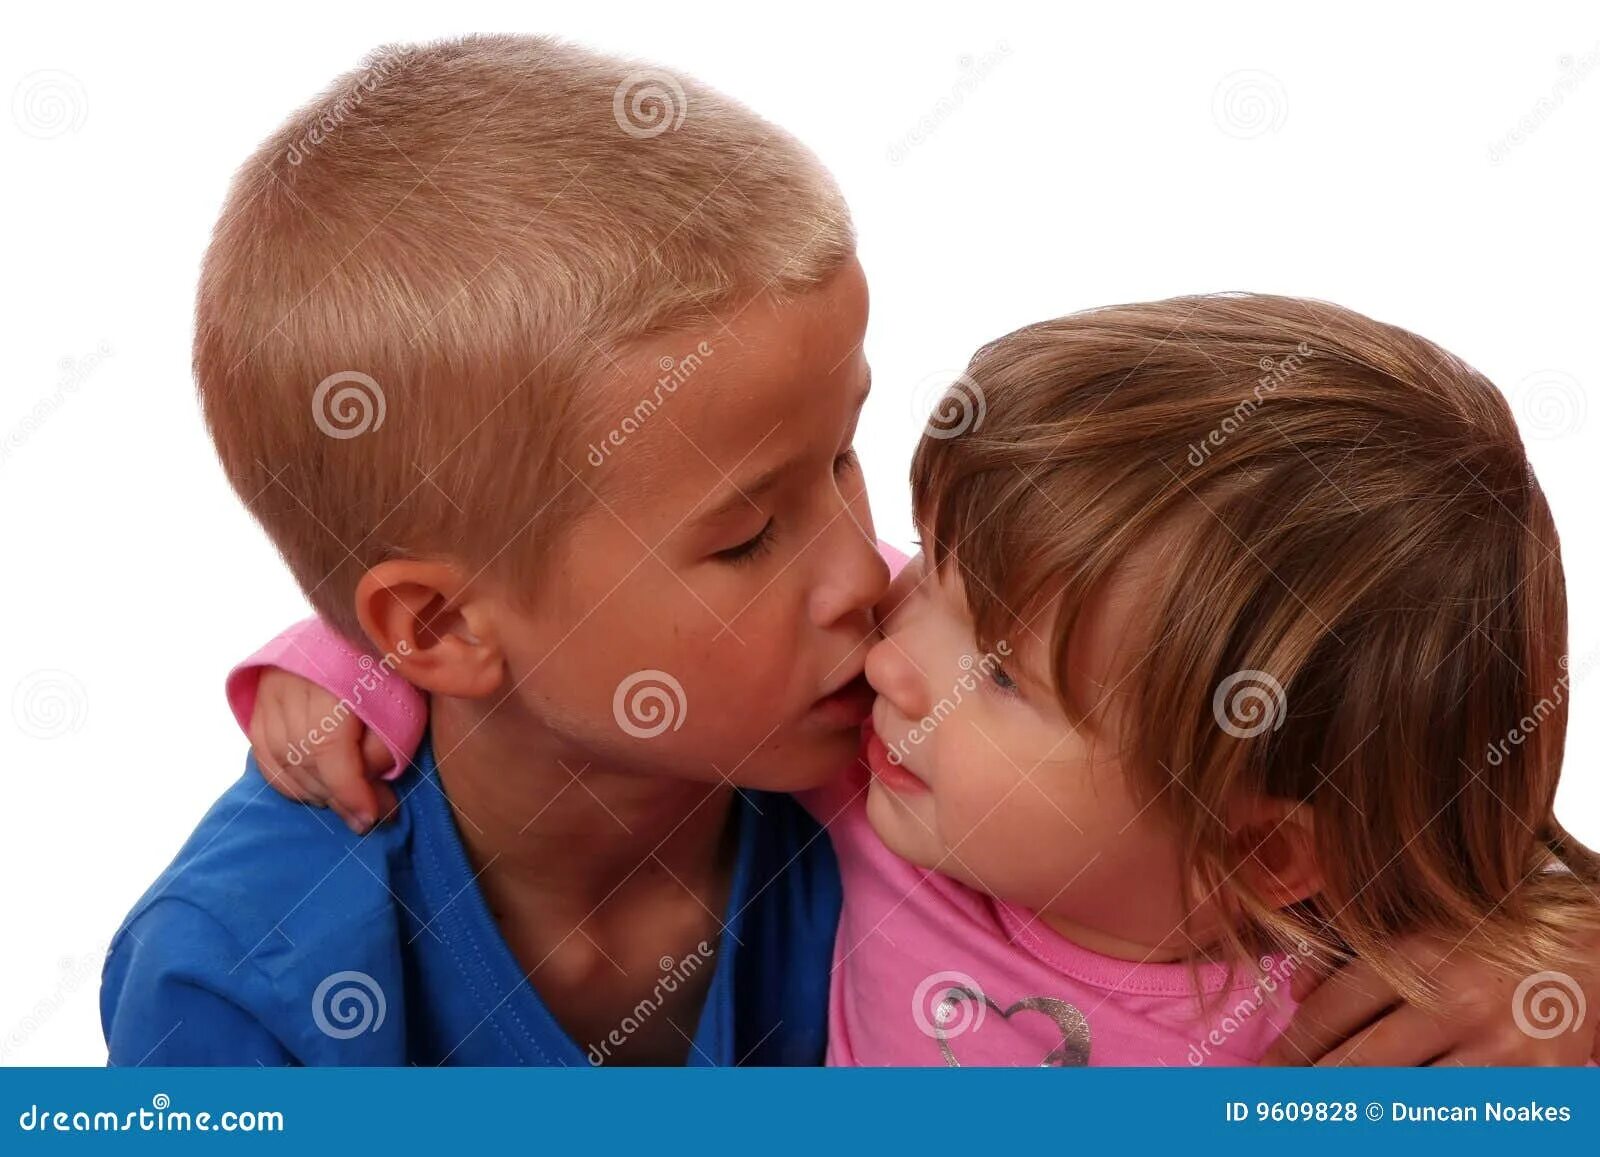 Старший брат целует младшего. Мальчик целует брата. Сосание девочки мальчиком. Дети отсасывают друг другу. Старший брат отсосал младшему